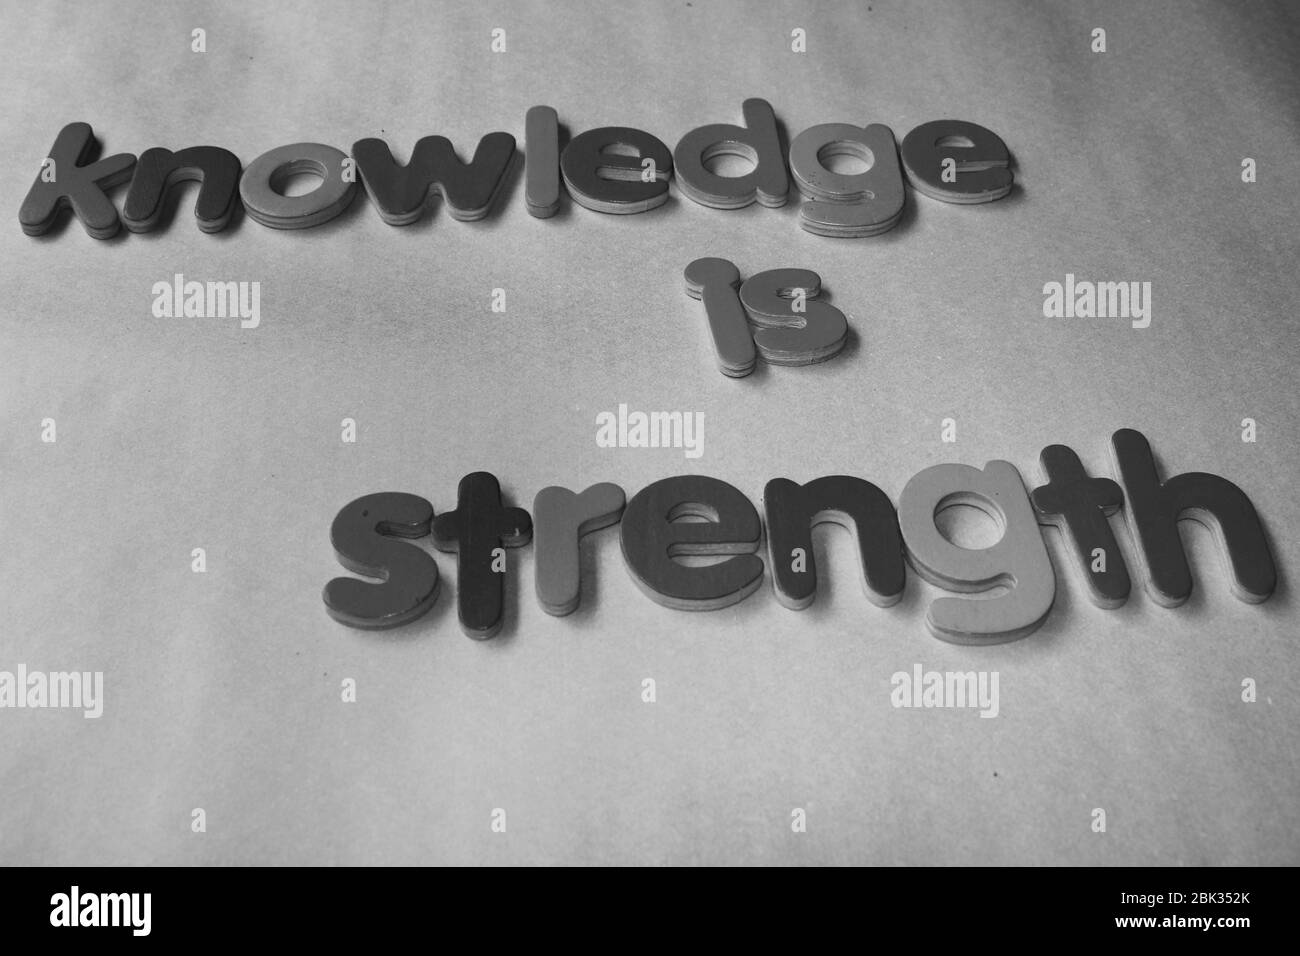 La connaissance est la force. La connaissance est la force écrite sur le mur en utilisant l'alphabet anglais en bois. Banque D'Images